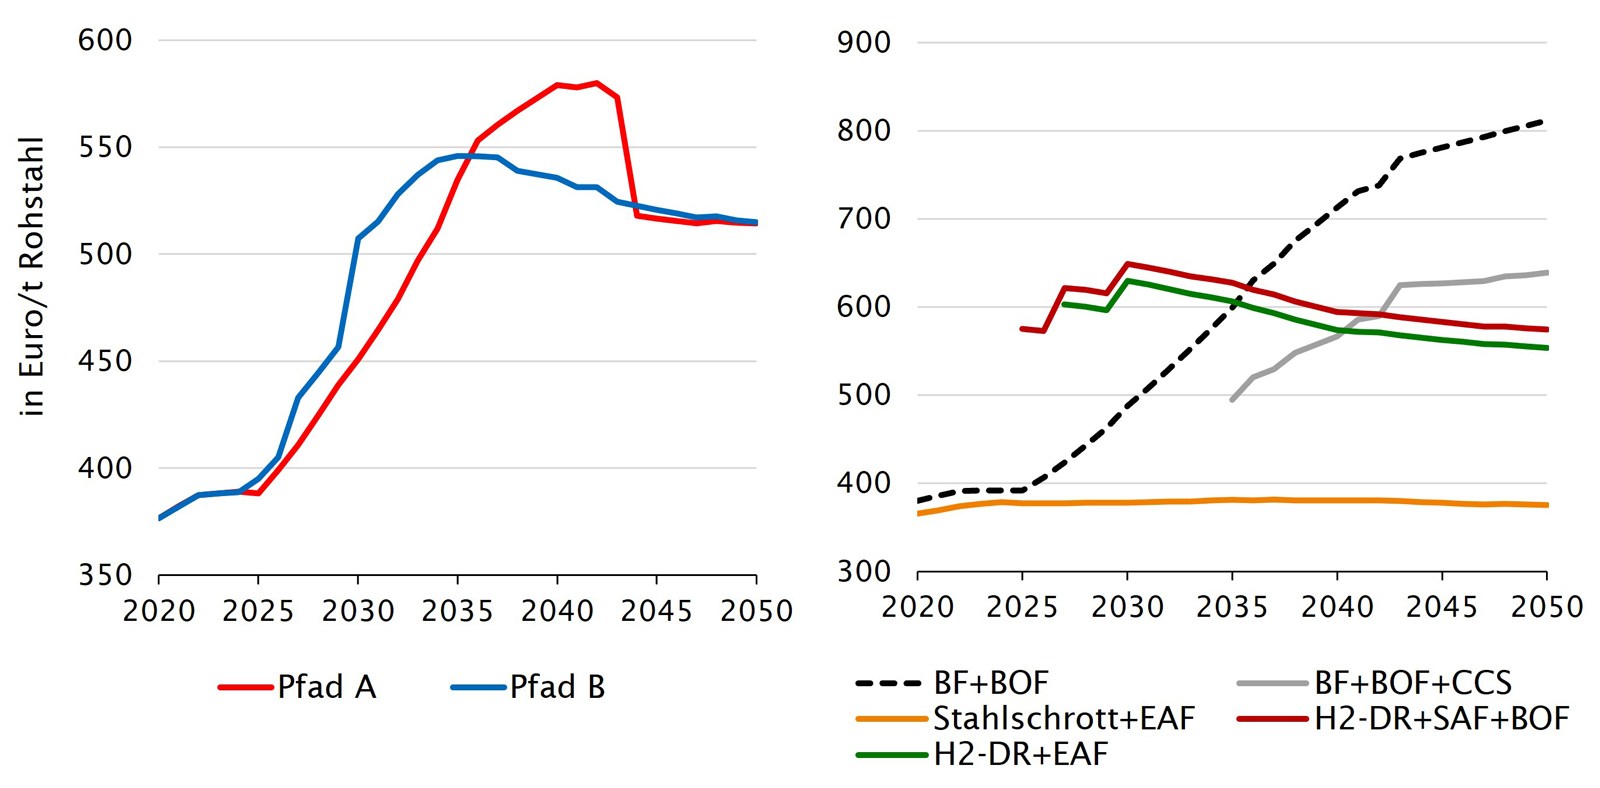 Abb. 3.1  Zwei Liniendiagramme. Horizontale Achse bei beiden Zeitraum 2020 bis 2050. Links: Vertikale Achse: Produktionskosten Stahl in Euro/t Rohstahl im Bereich 350 bis 600. Gezeigt sind zwei Linien für die Kostenentwicklung in Pfad A und Pfad B. Beide Linien starten in 2020 bei etwa 380 Euro/t. Pfad B steigt steiler an bis zum Maximum von etwa 550 Euro/t in 2035, danach sinkt die Linie bis auf ca. 520 Euro/t in 2050. Der Anstieg von Pfad A ist etwas flacher, hält dafür länger an bis zum Maximum von etwa 580 Euro/t in 2040. Danach sinkt er relativ schnell bis im Jahr 2045 das Niveau von Pfad B erreicht wird. Danach verläuft Pfad A genau wie Pfad B.  Rechts: Produktionskosten Stahl in Euro/t Rohstahl im Bereich 300 bis 900. Gezeigt sind fünf Linien für die verschiedenen Produktionsrouten. Diese zeigen sehr unterschiedliche Verläufe.